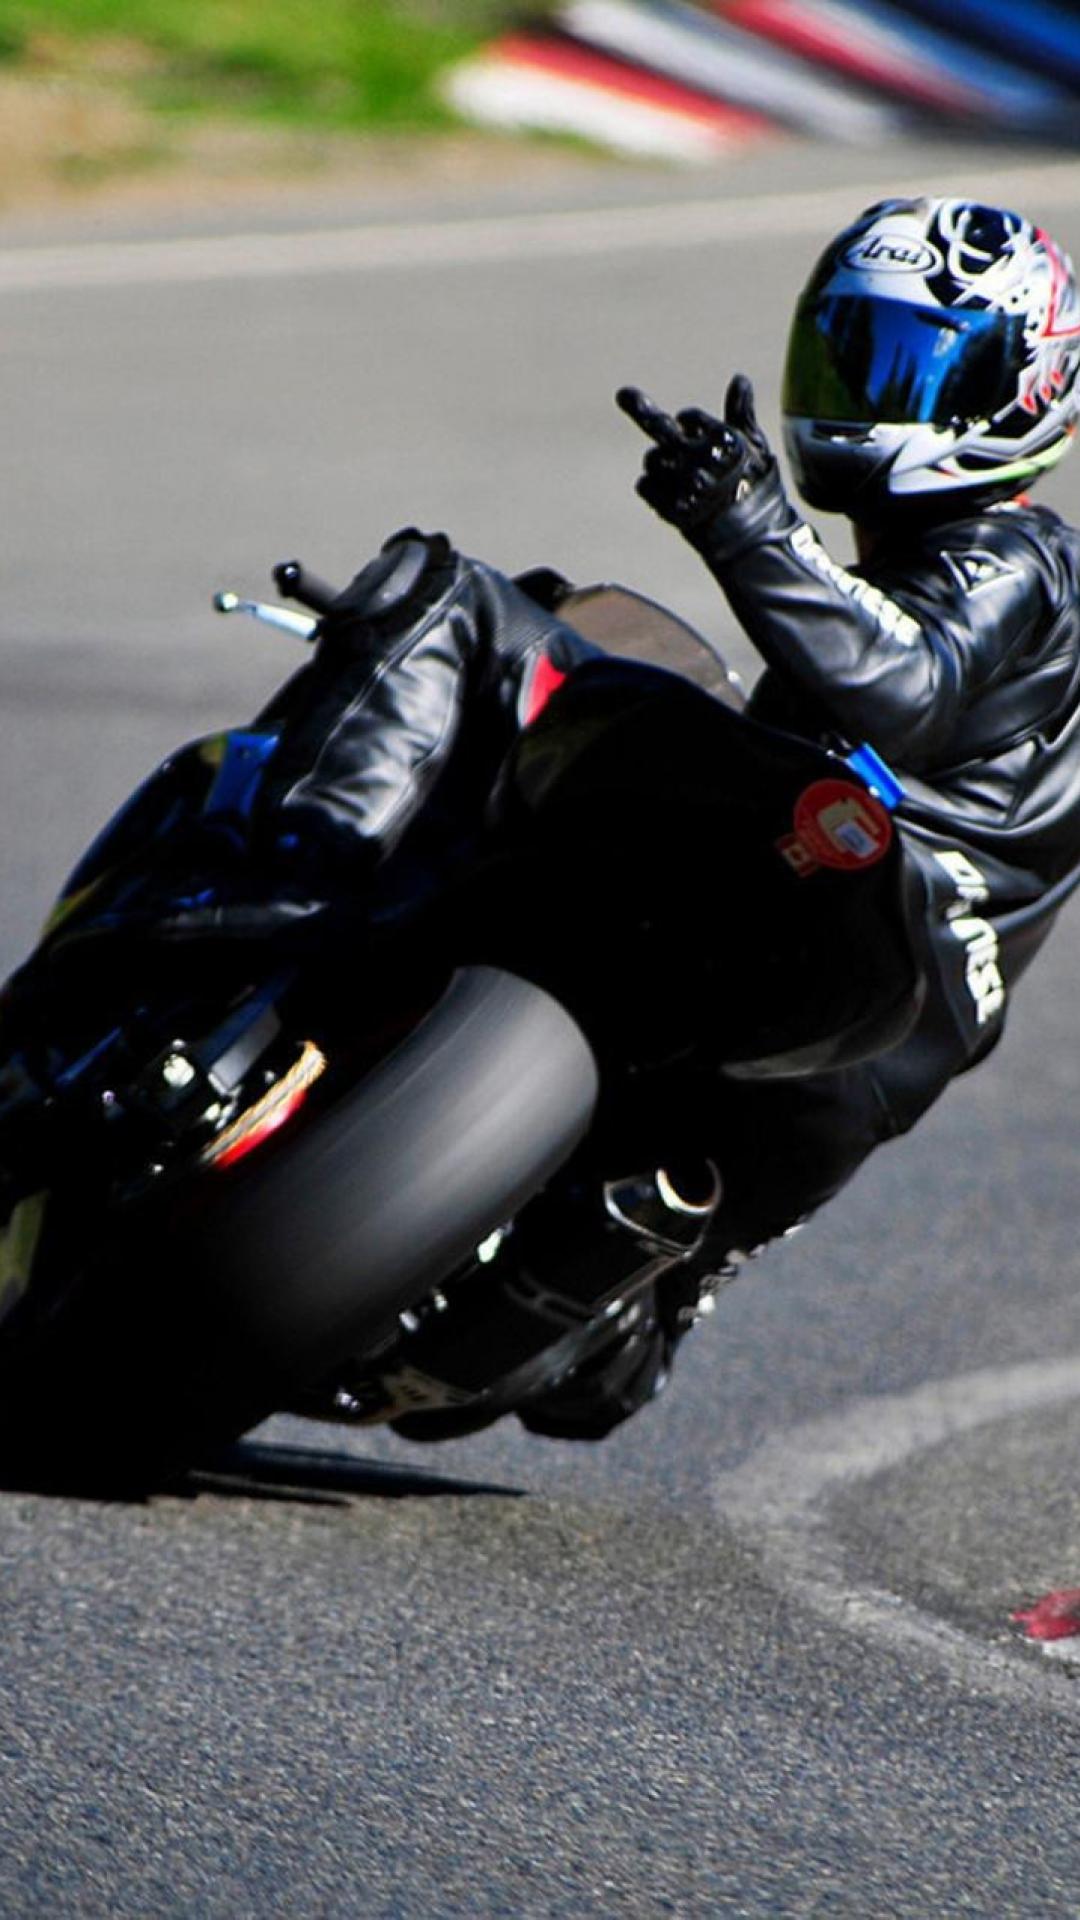 bike wallpapers hd,motorcycle racer,motorcycle,motorcycle helmet,motorcycling,vehicle